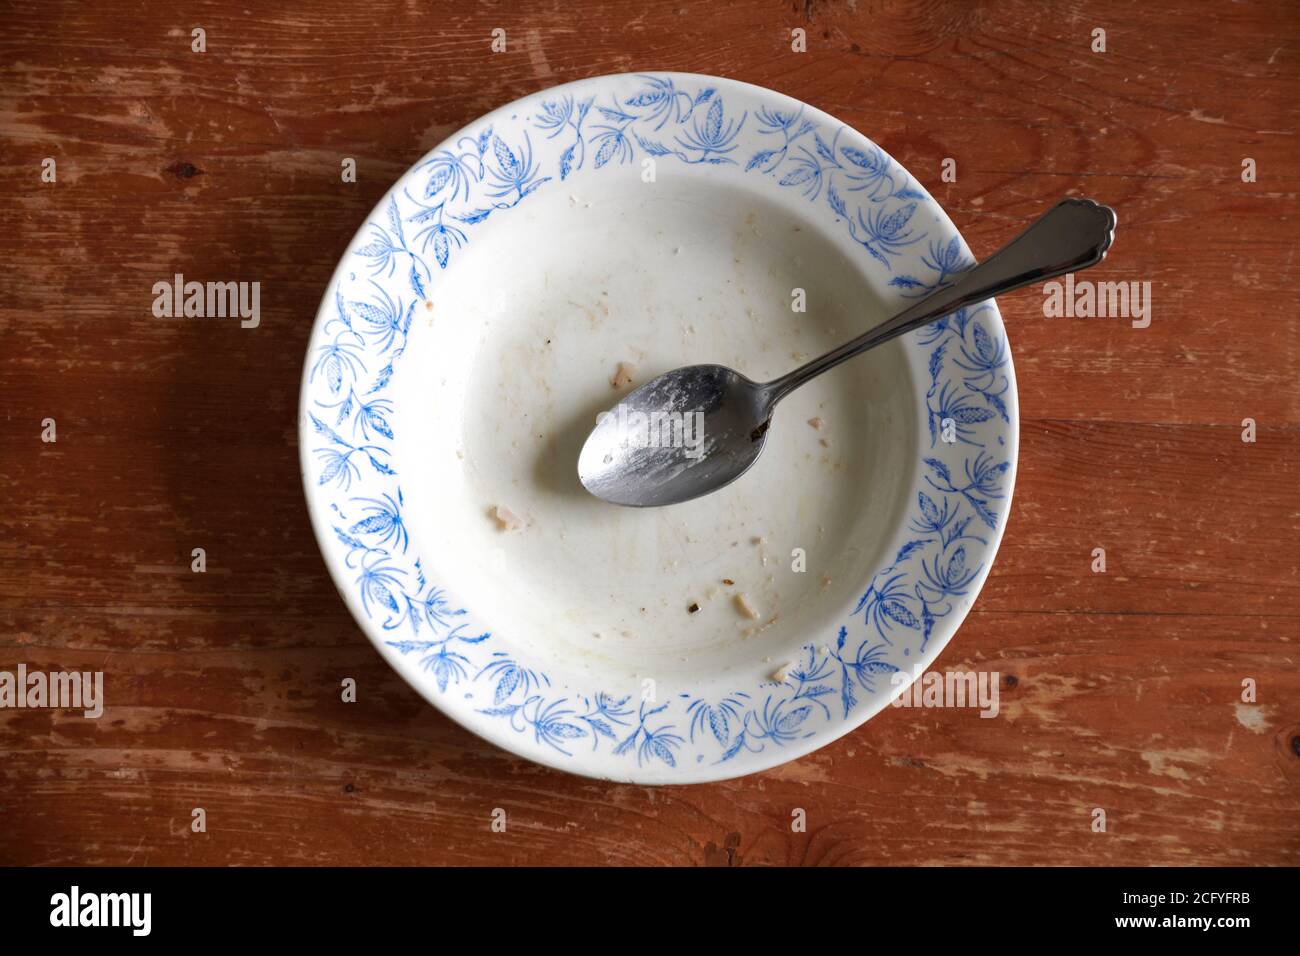 Ein leer gegessener weisser, tiefer Teller mit blauen, floralem Muster mit einem silbernen Loeffel steht auf einer braunen, stark beanspruchten Tischp Stock Photo